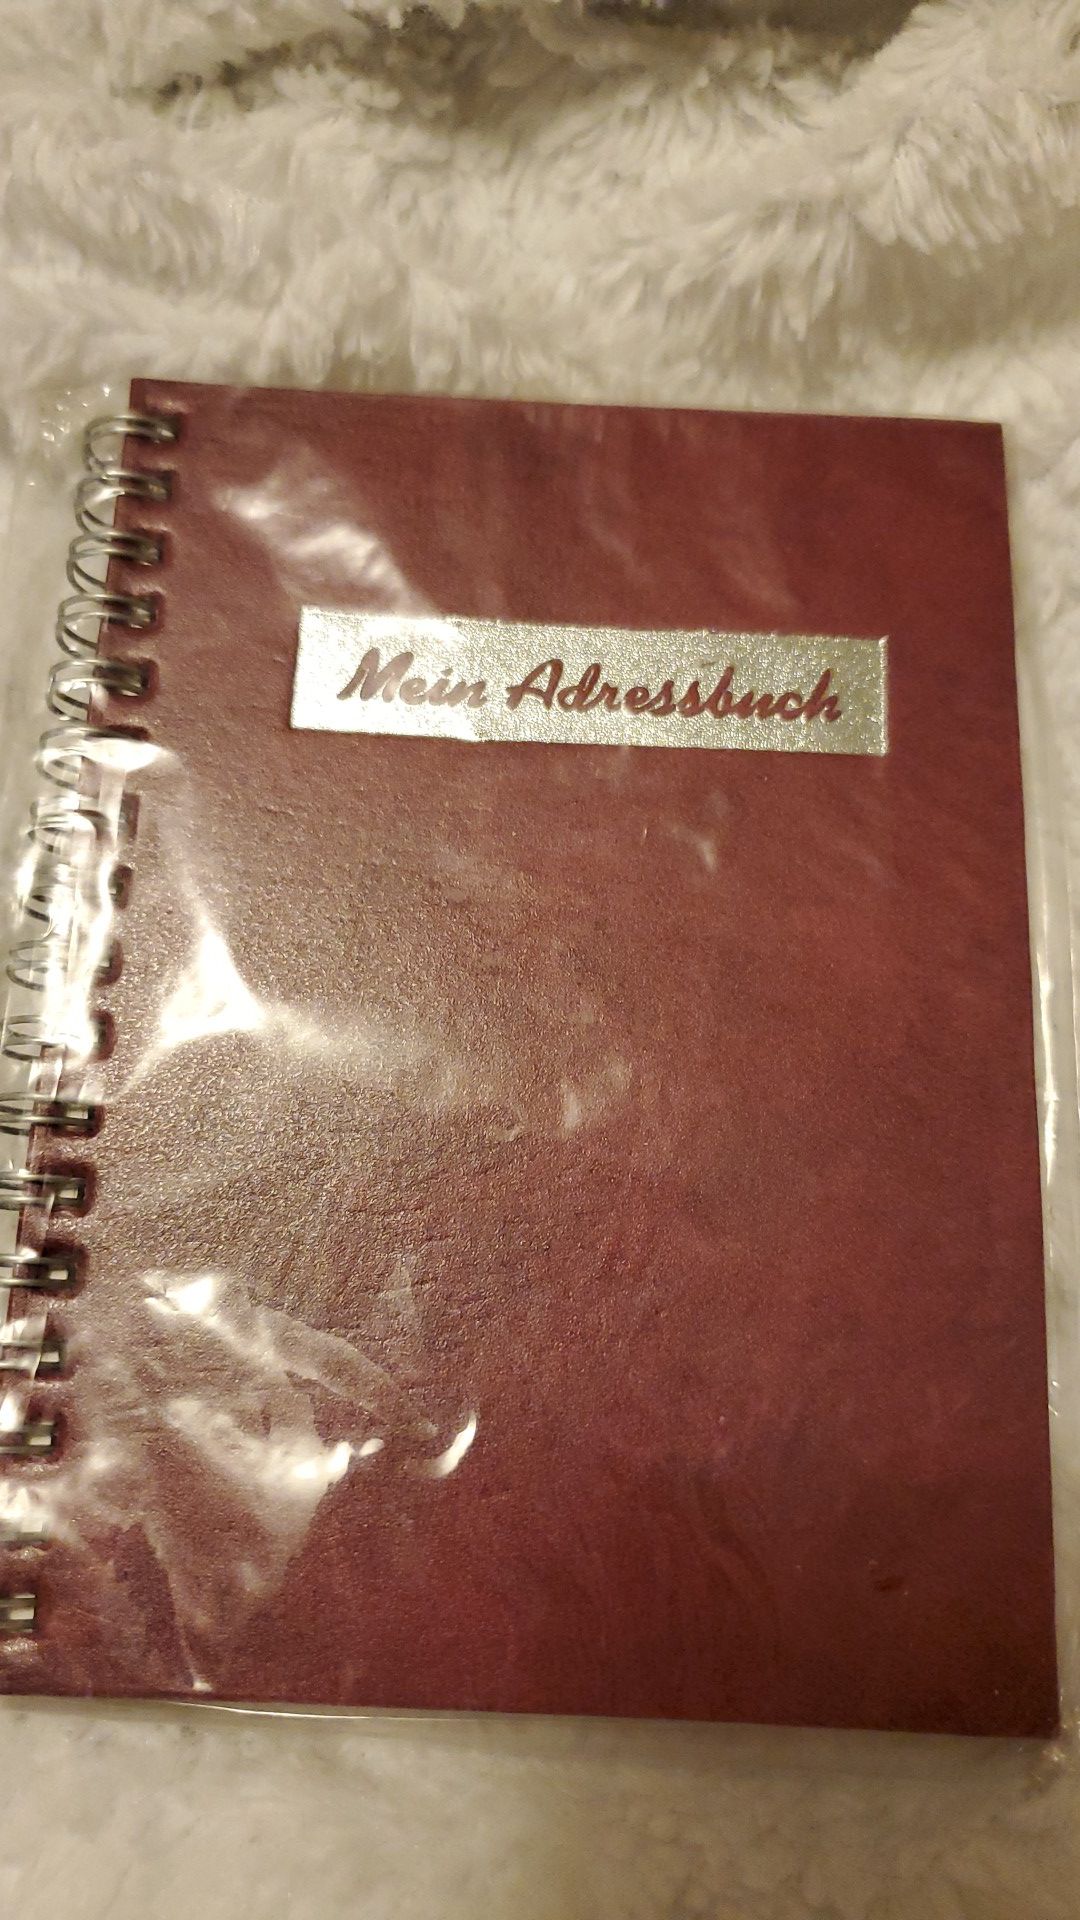 German adressbook